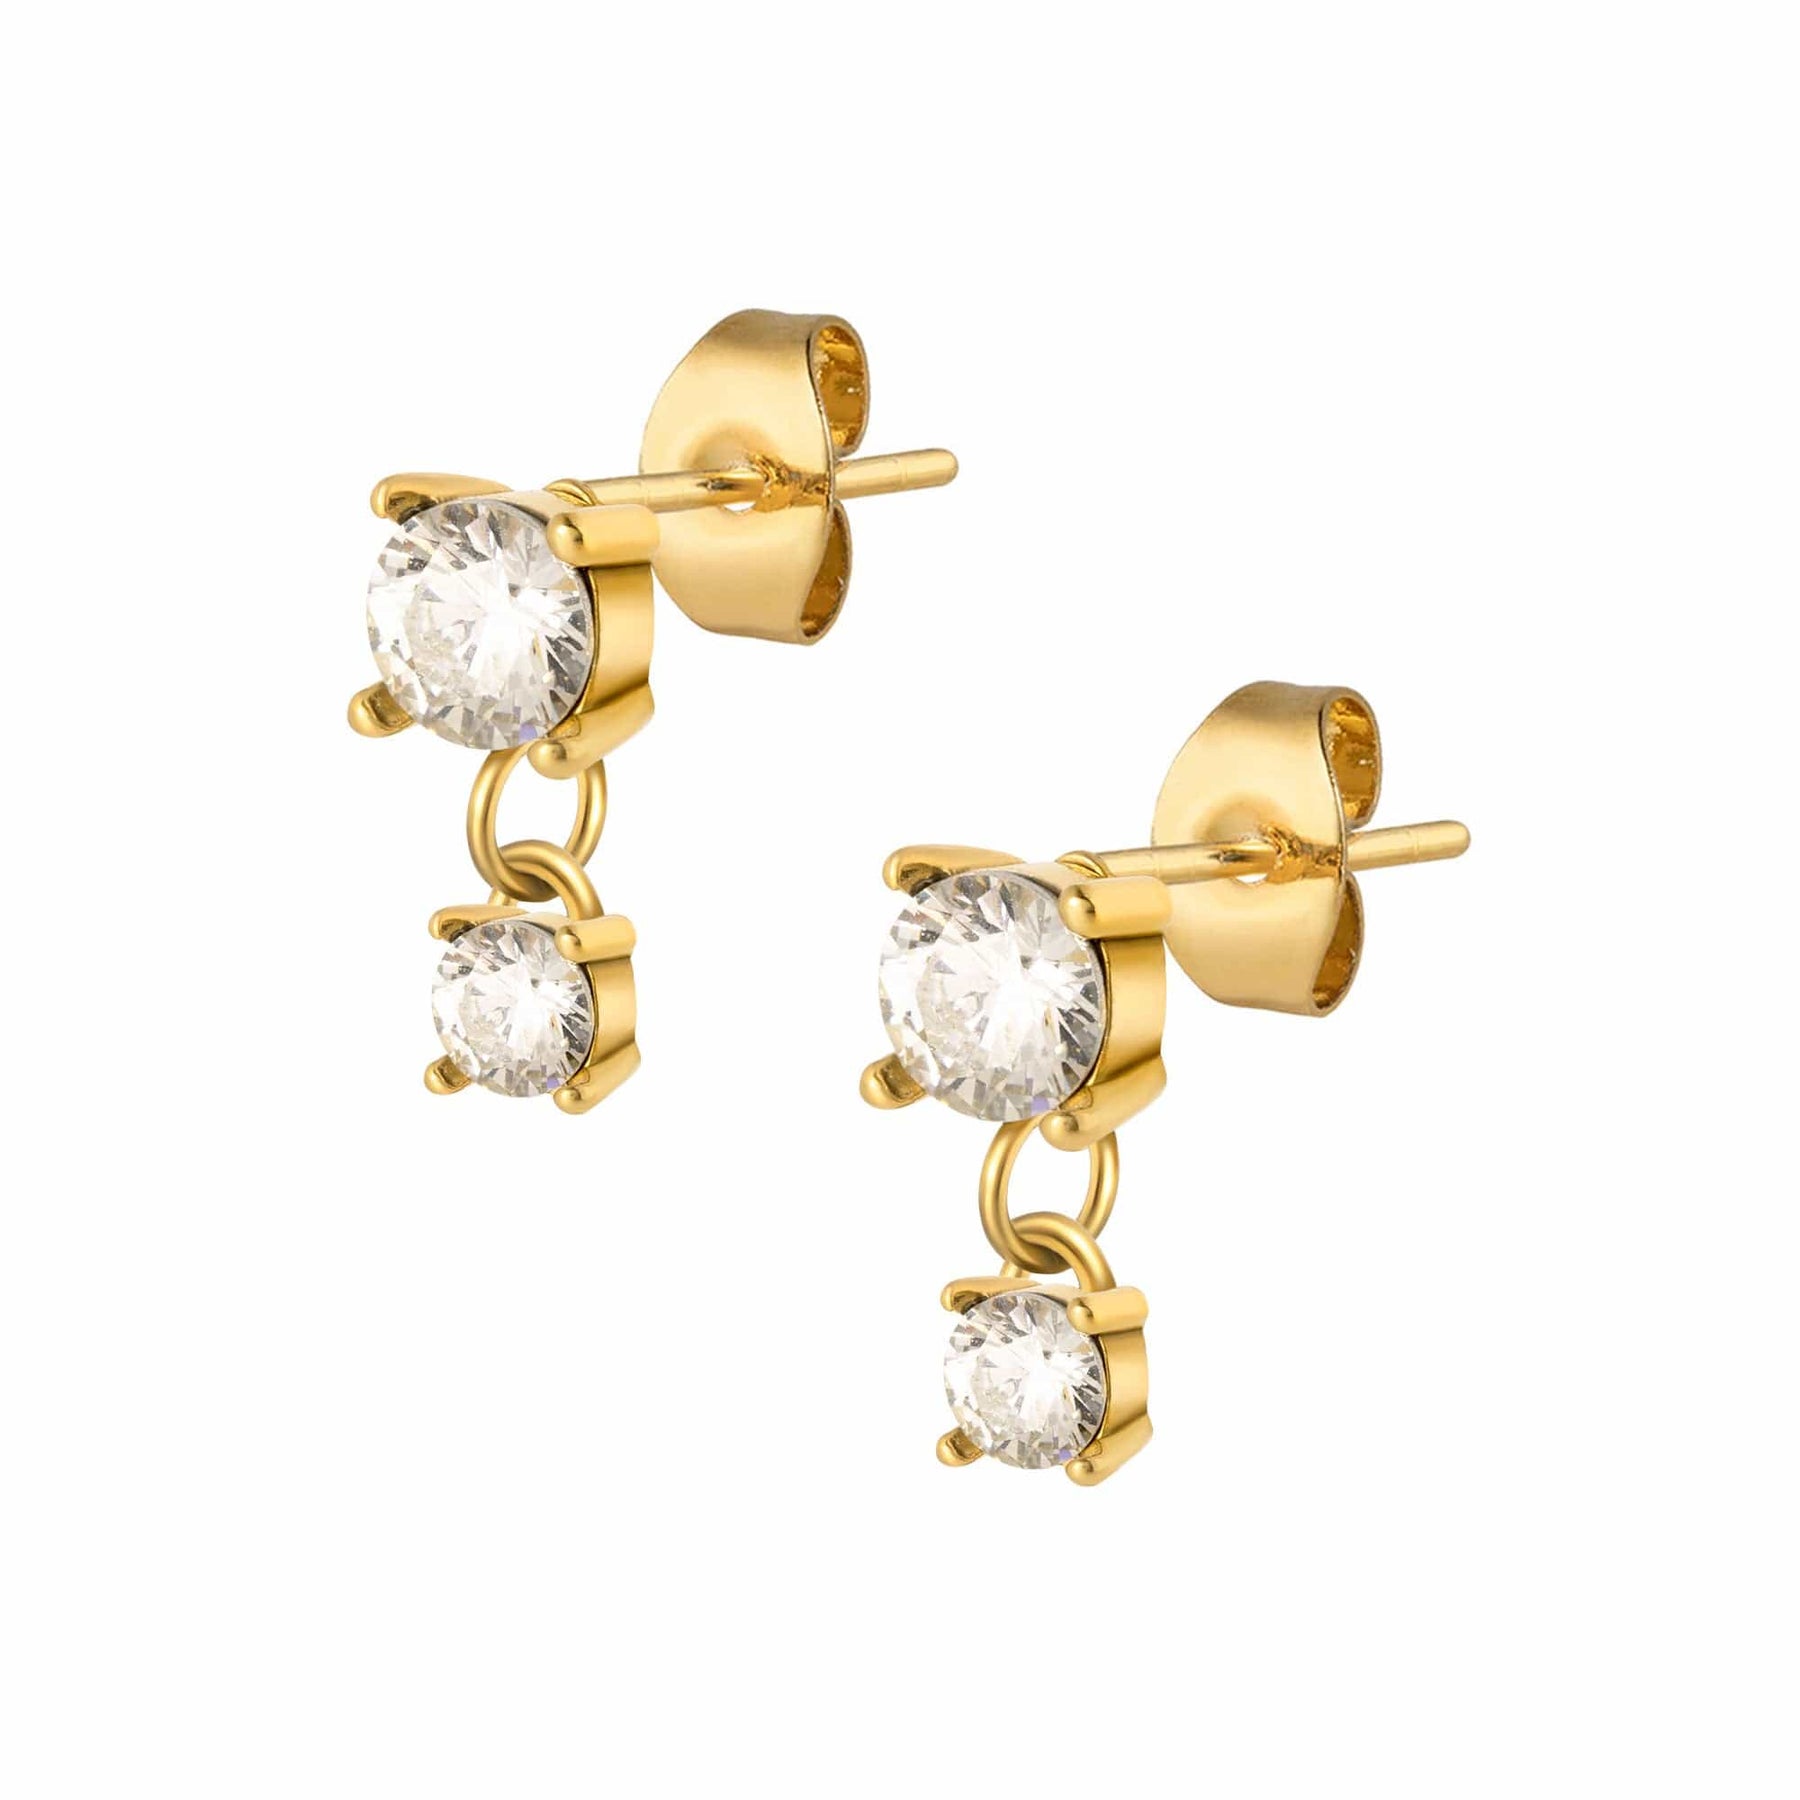 BohoMoon Stainless Steel Lumen Hoop Earrings Gold